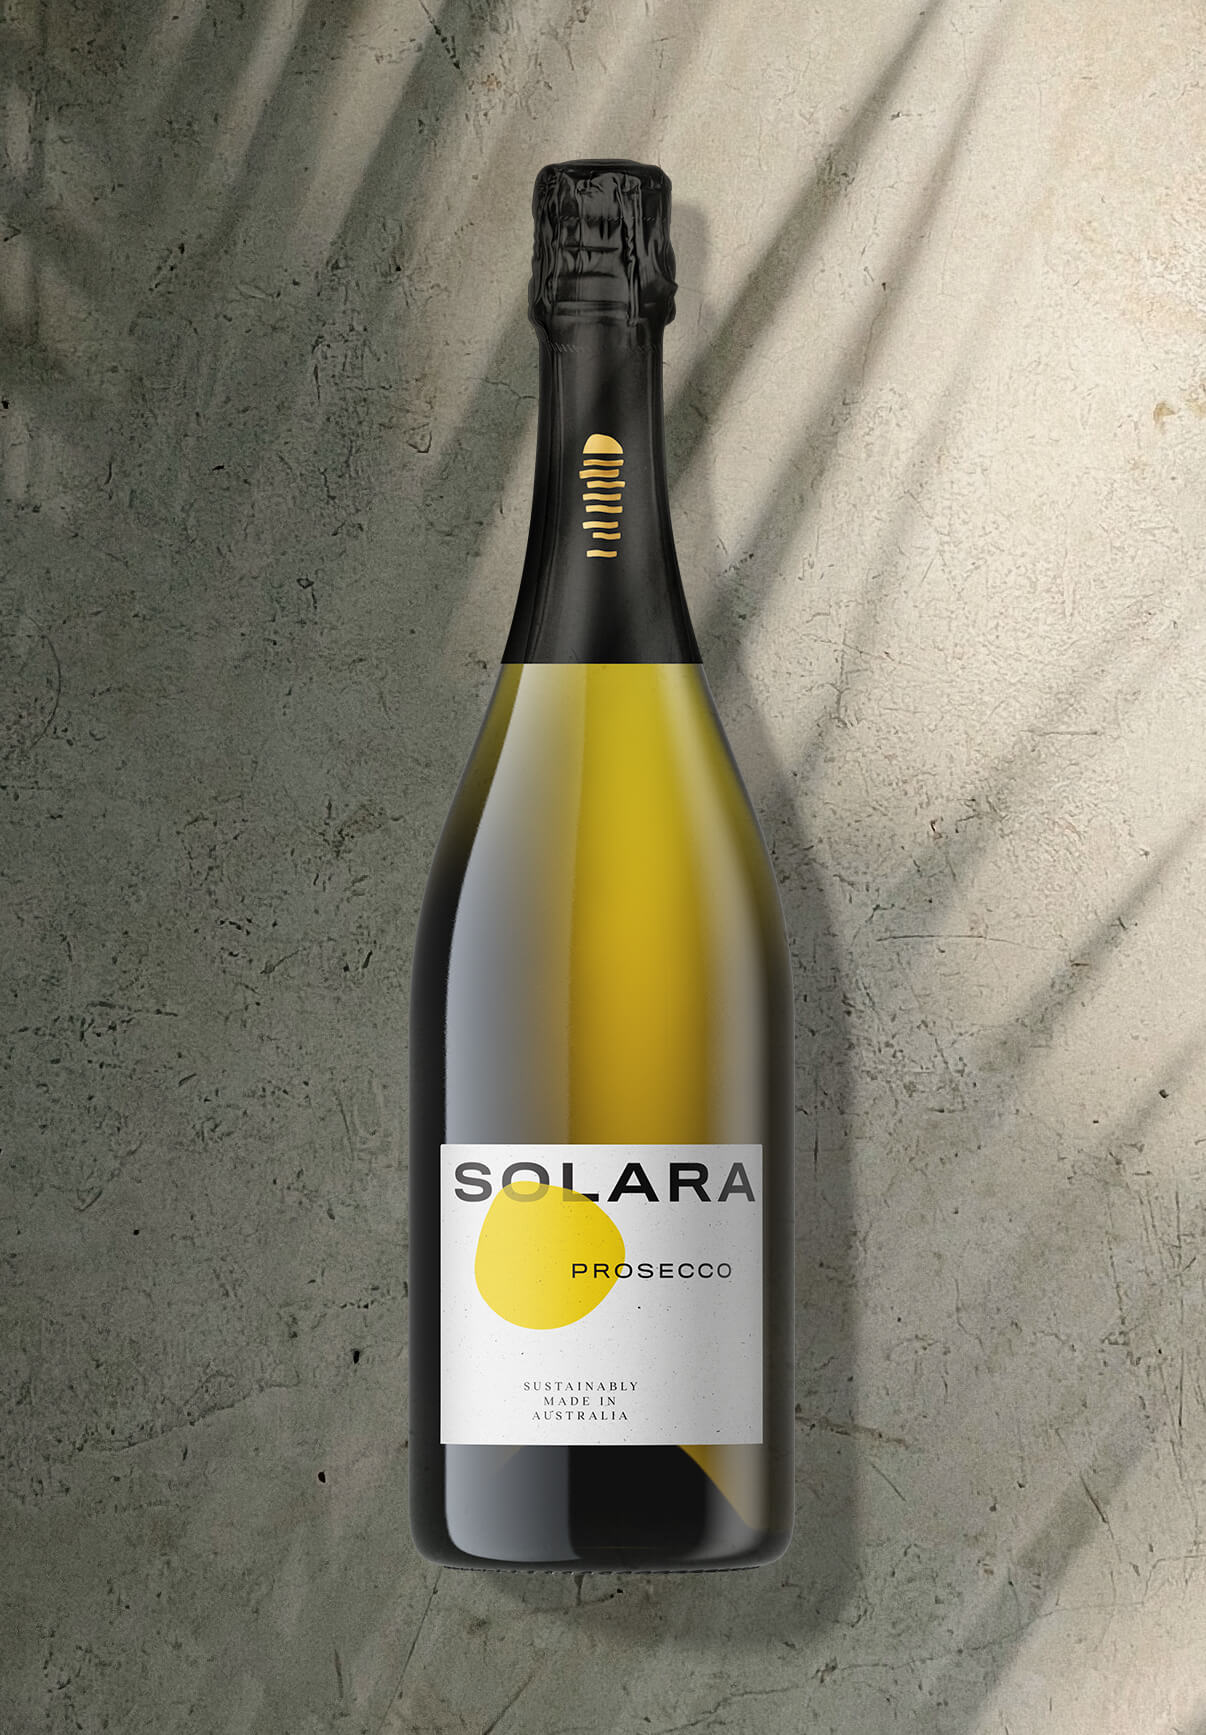 SOLARA-PROSECCO-1206x1735px